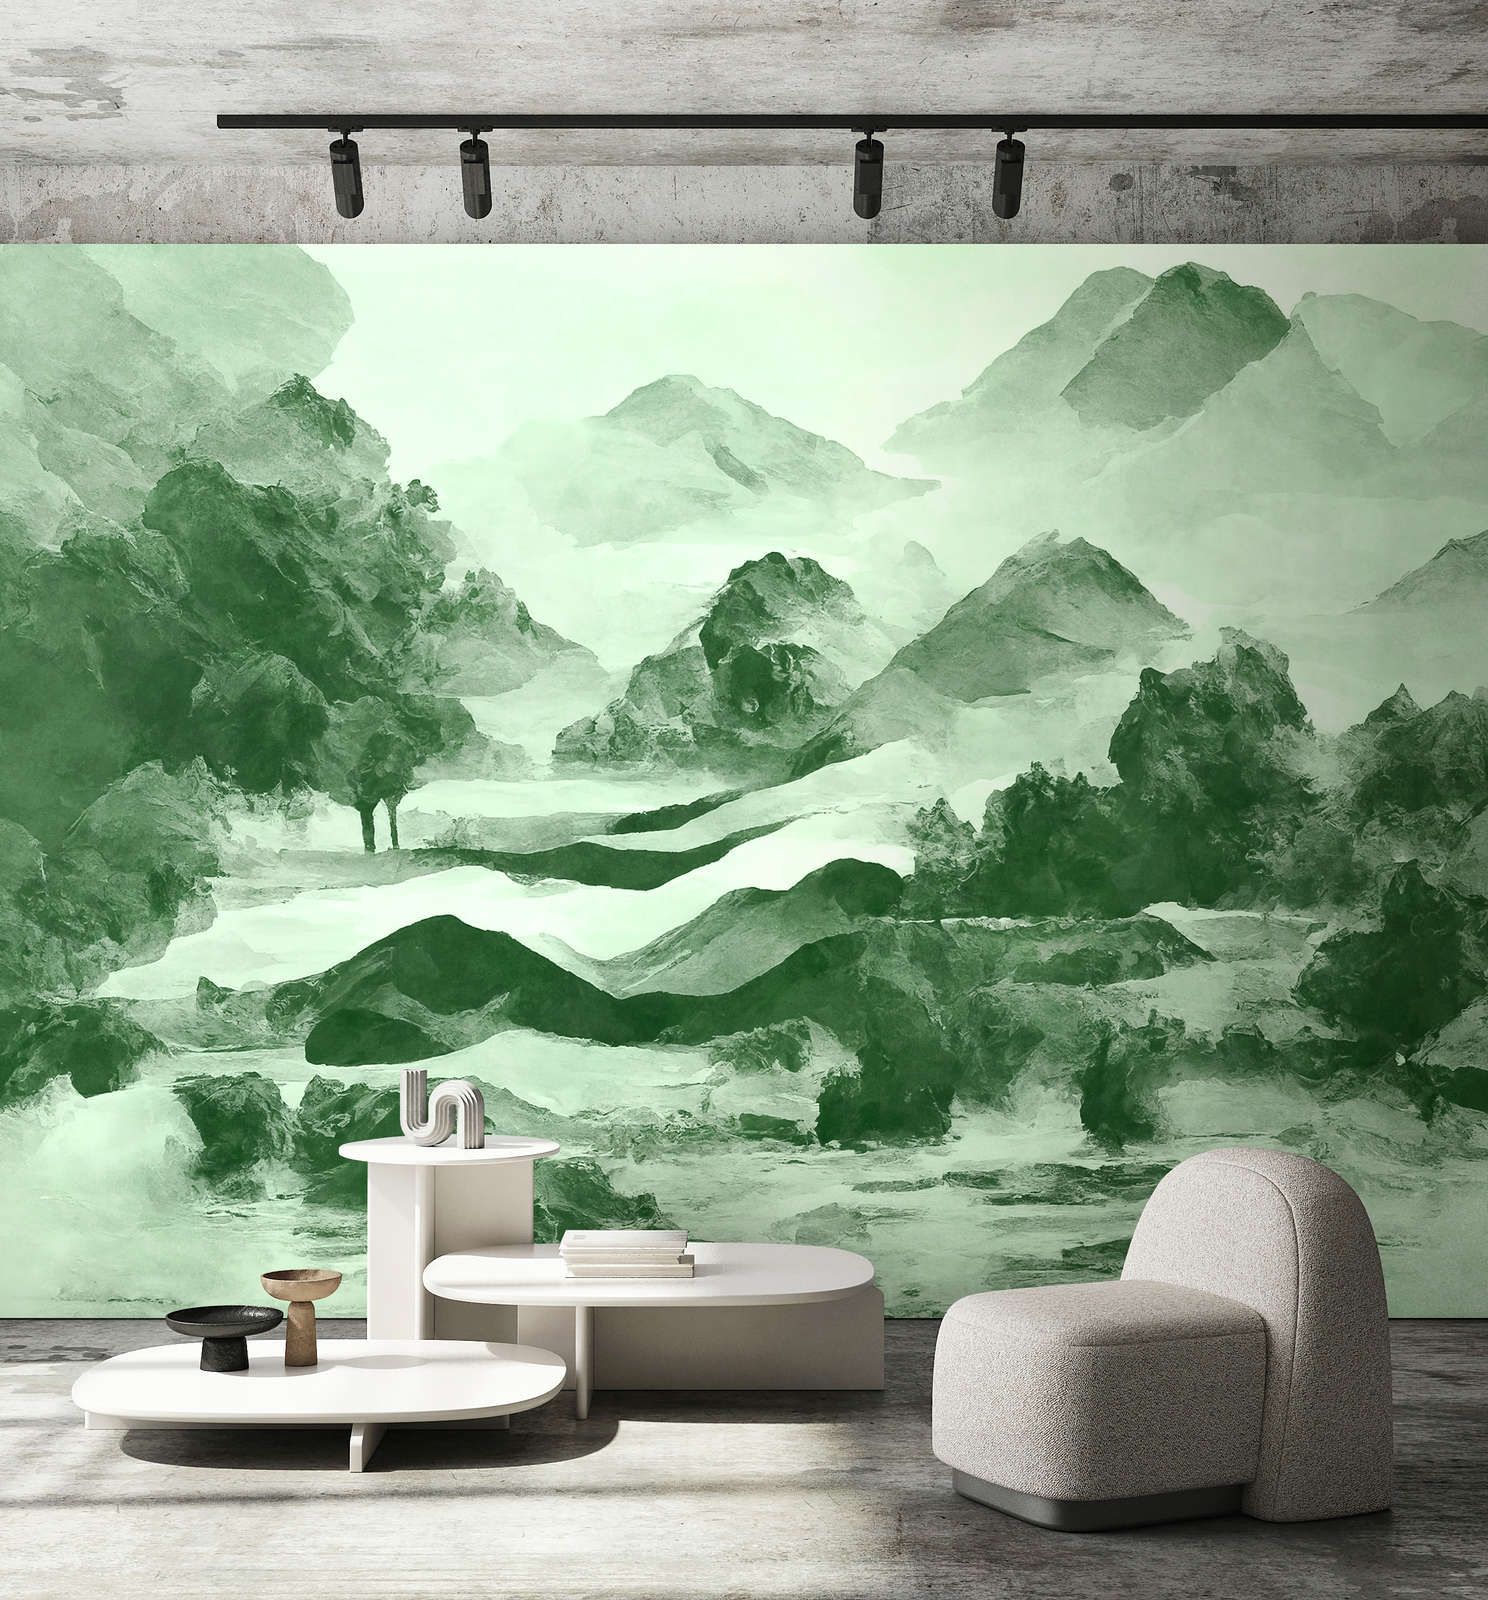             Digital behang »tinterra 2« - Landschap met bergen & mist - Groen | Glad, licht glanzend premium vliesdoek
        